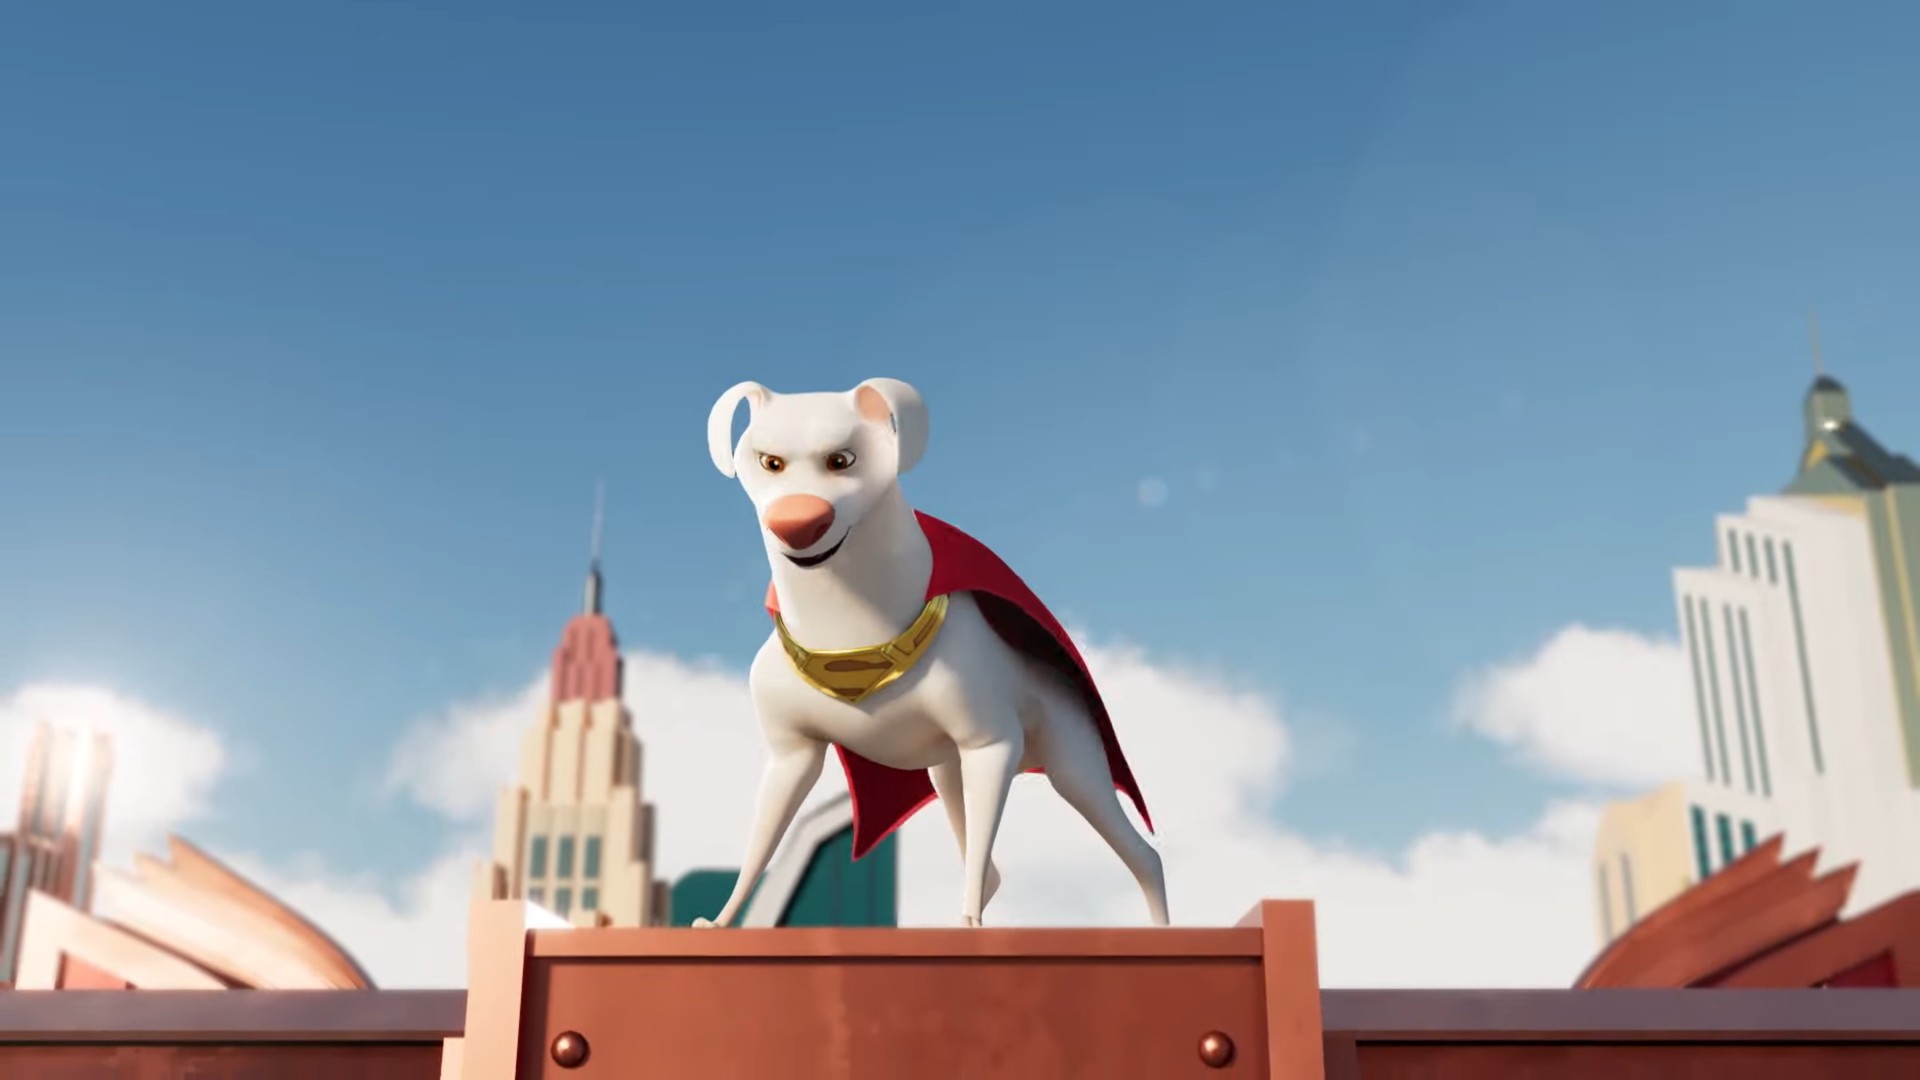 مشخص شدن صداپیشه سوپرمن در انیمیشن سینمایی جدید دنیای دی سی